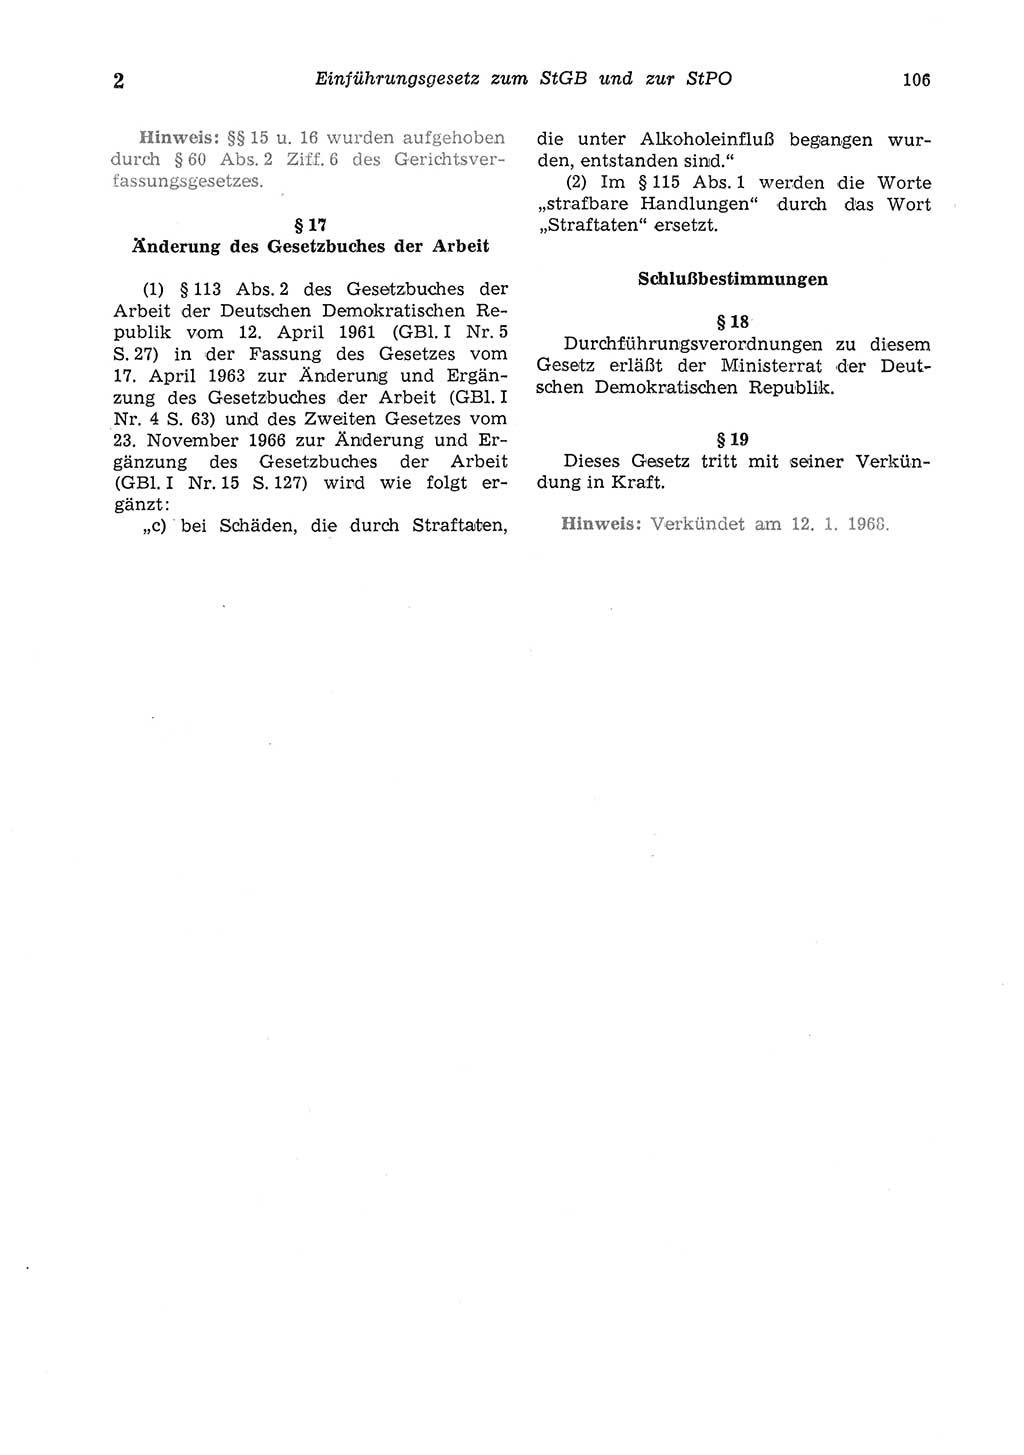 Strafgesetzbuch (StGB) der Deutschen Demokratischen Republik (DDR) und angrenzende Gesetze und Bestimmungen 1975, Seite 106 (StGB DDR Ges. Best. 1975, S. 106)